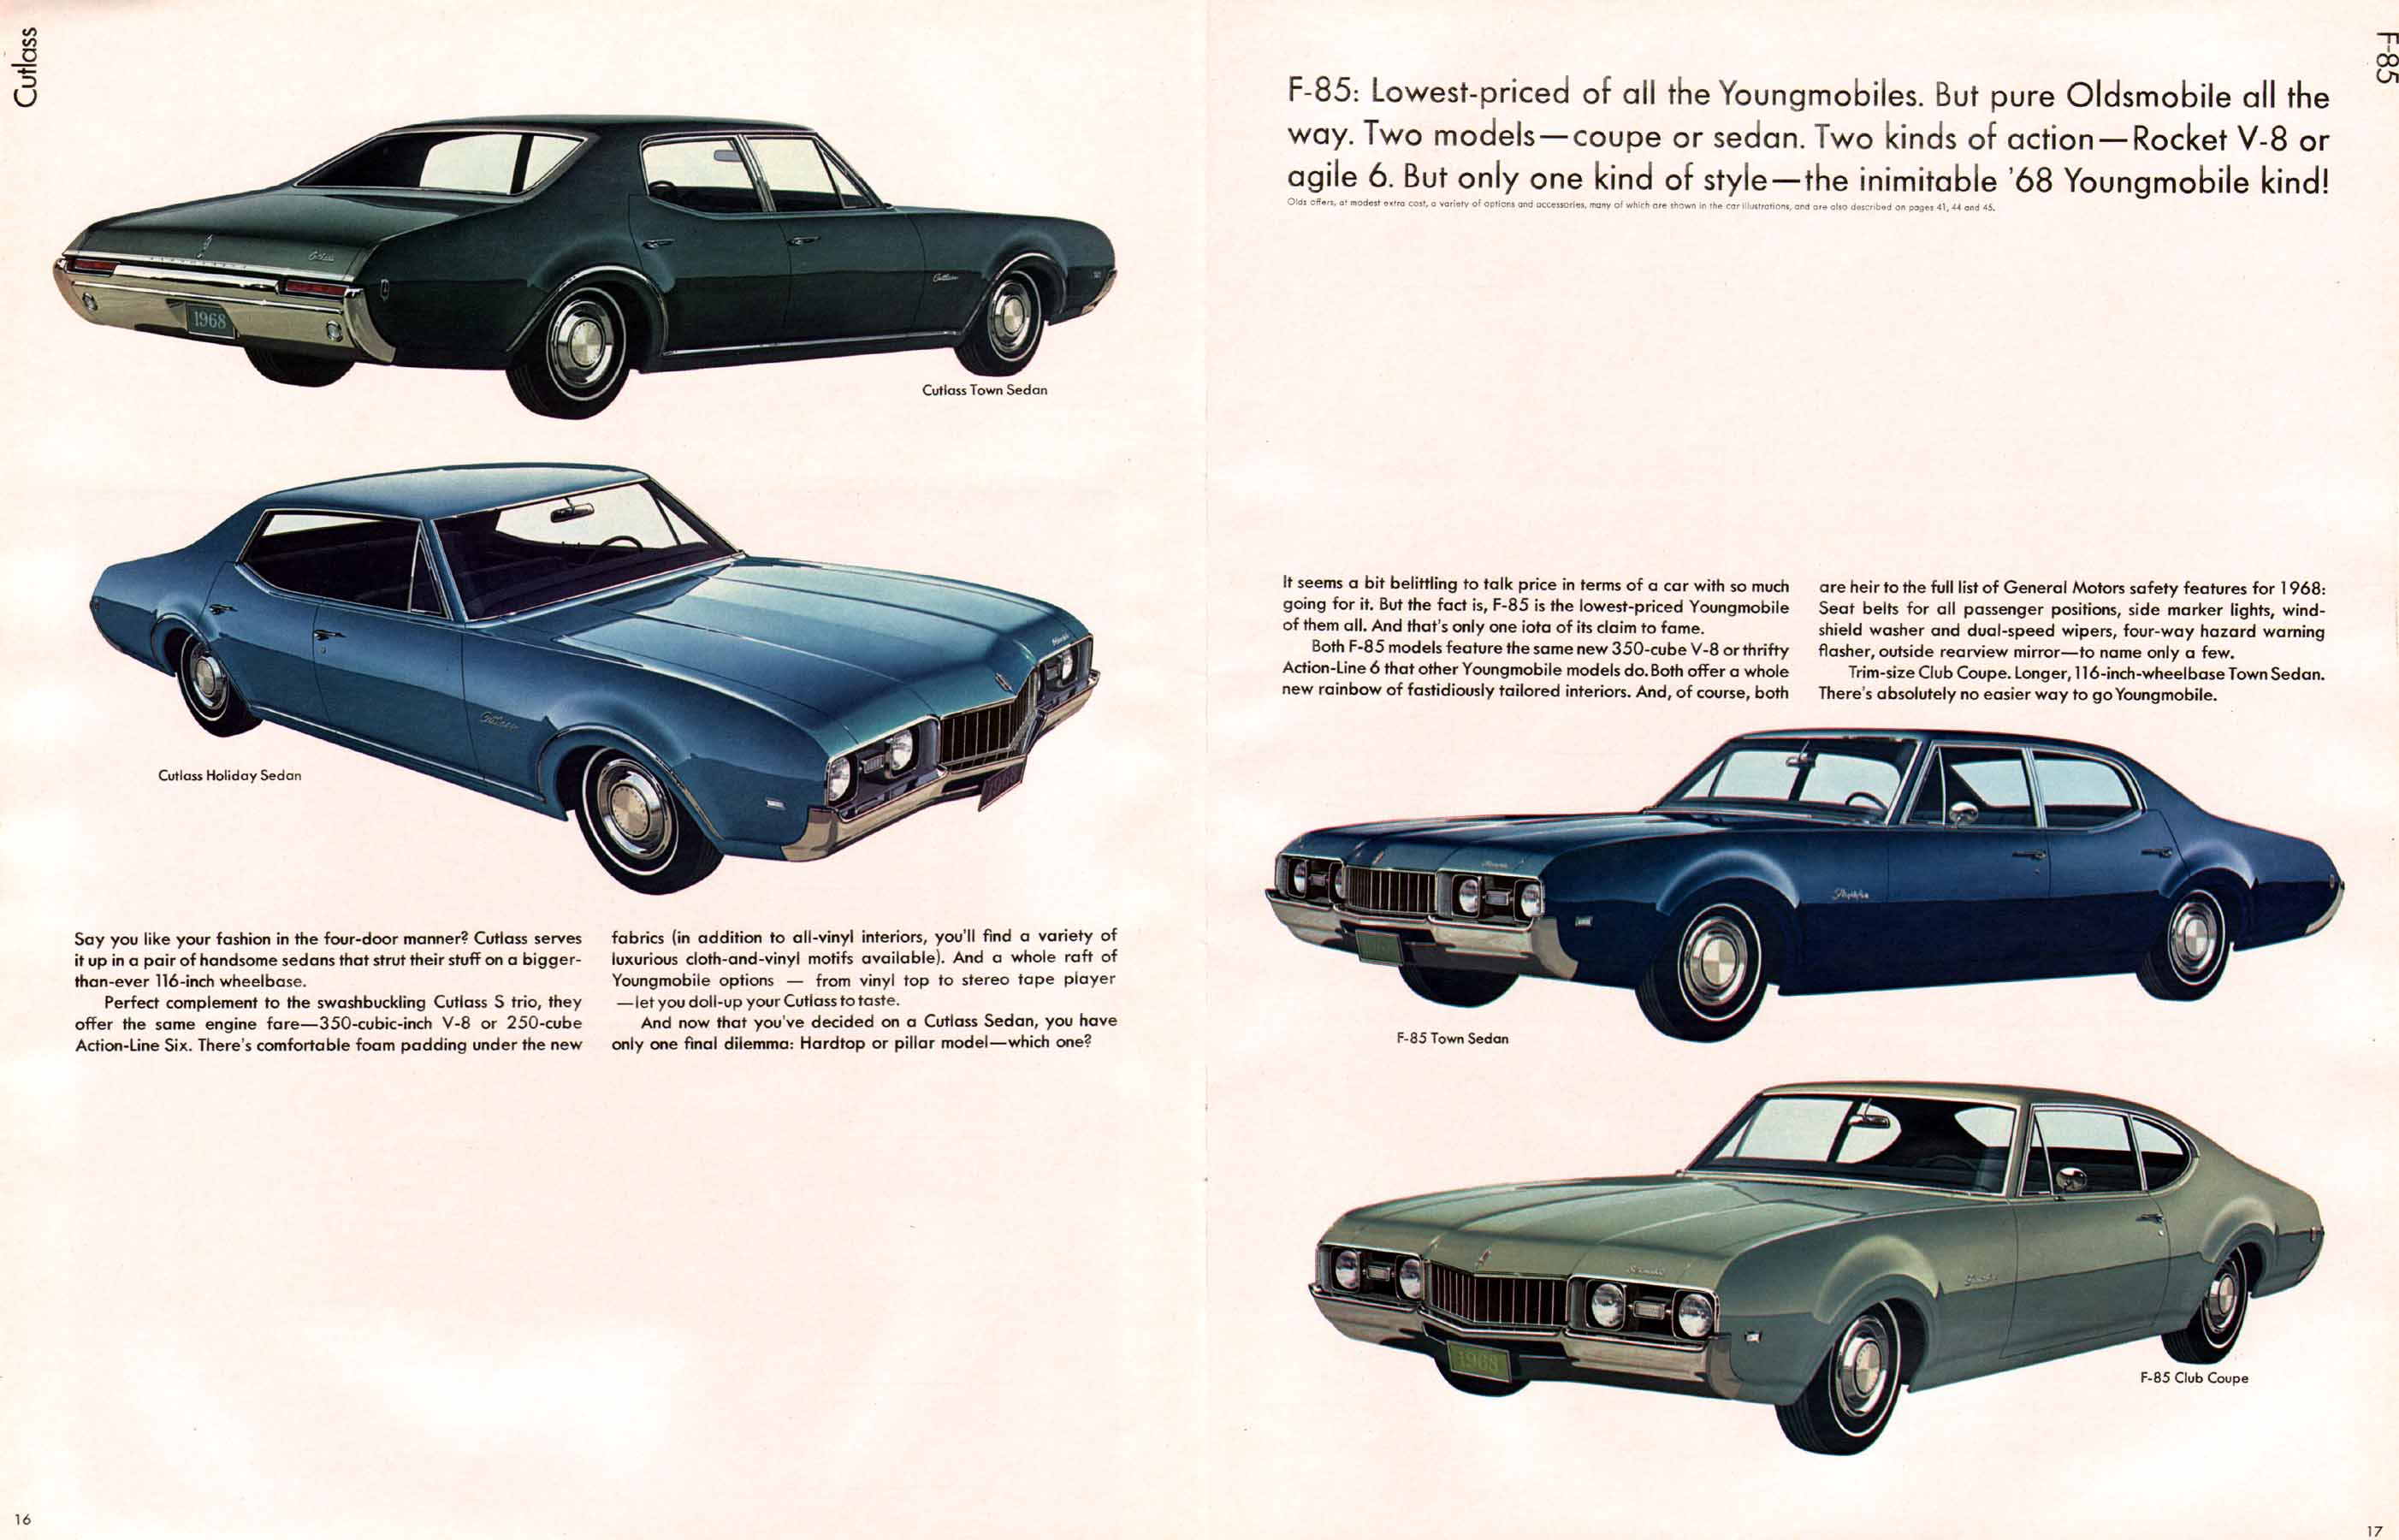 1968 Oldsmobile Prestige Brochure Page 18